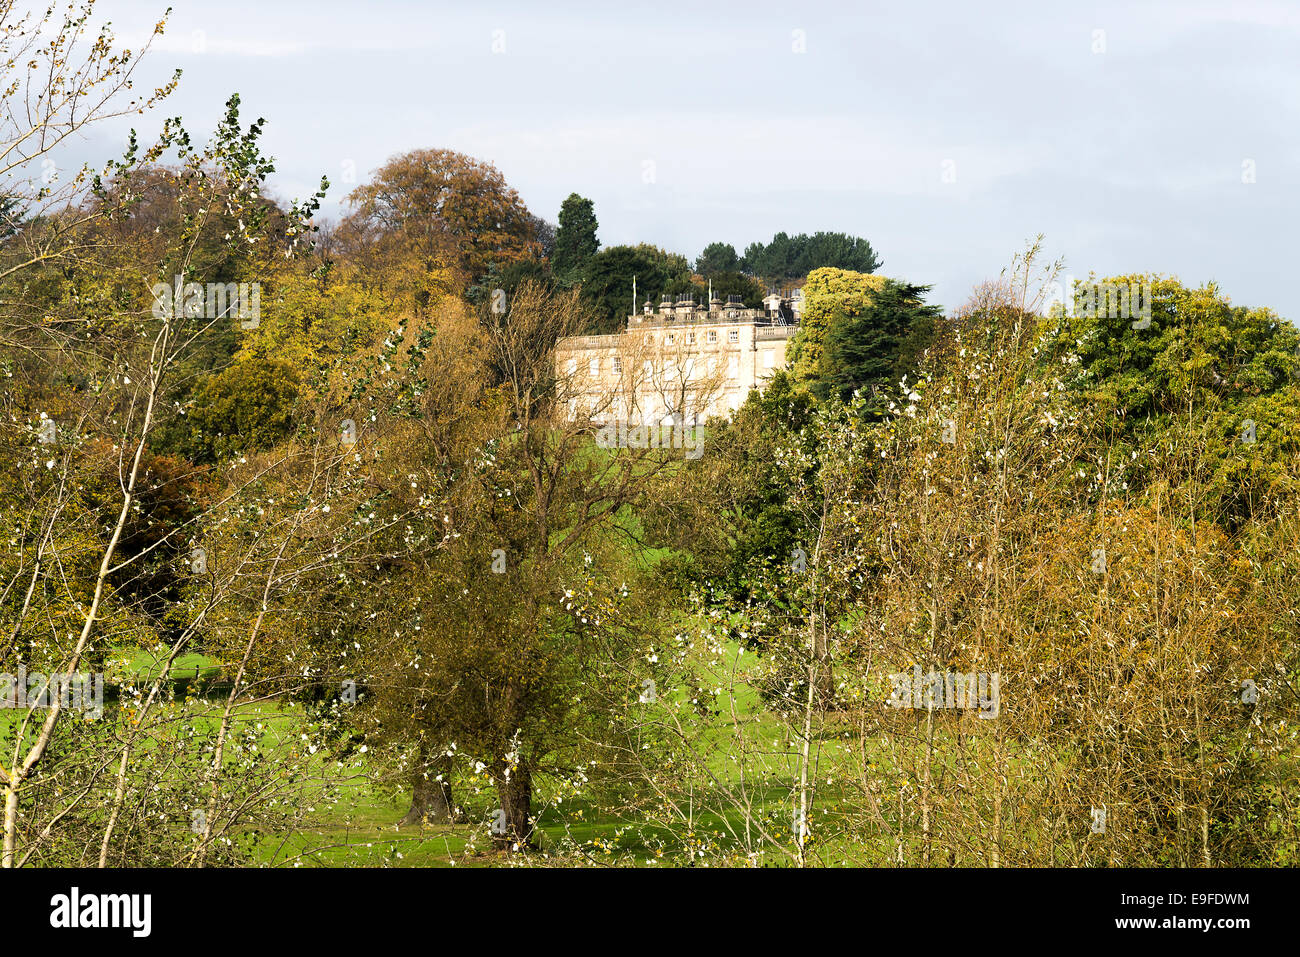 Die schöne Kanone Hall ehemaligen Herrenhaus und Park in der Nähe von Cawthorne Barnsley South Yorkshire England Vereinigtes Königreich UK Stockfoto